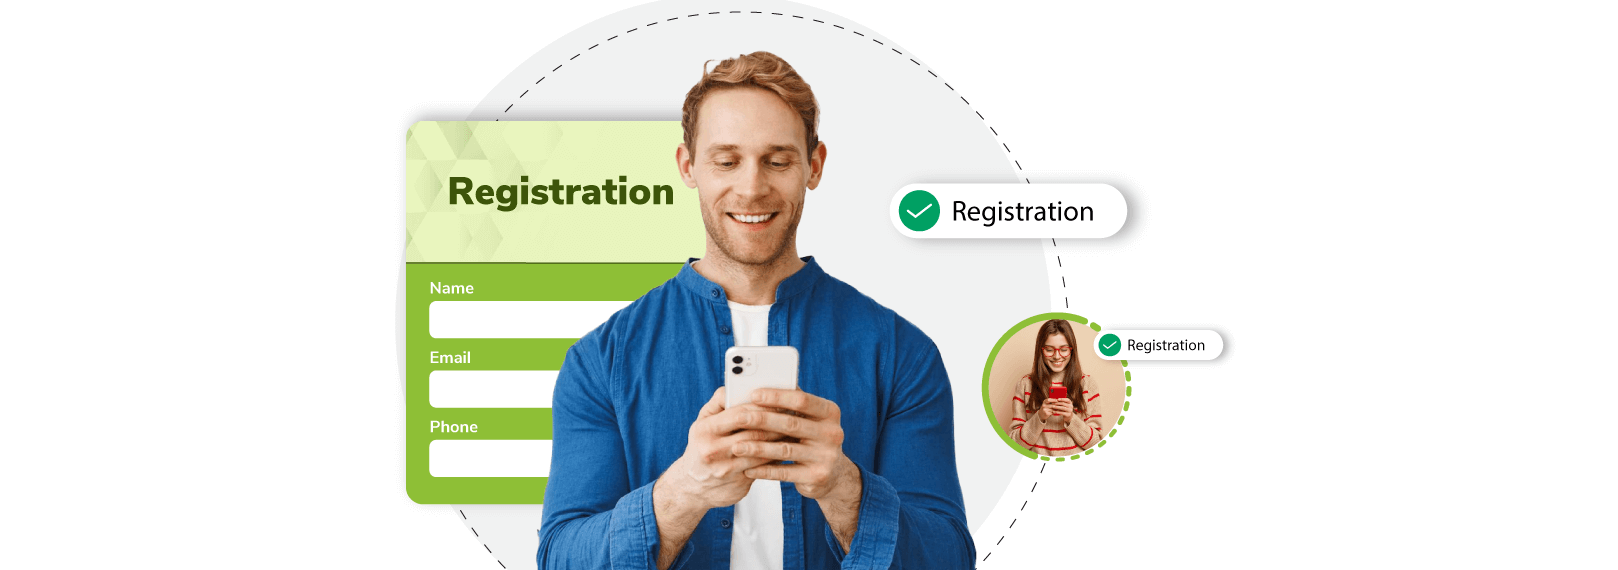 Event Registration Platforms